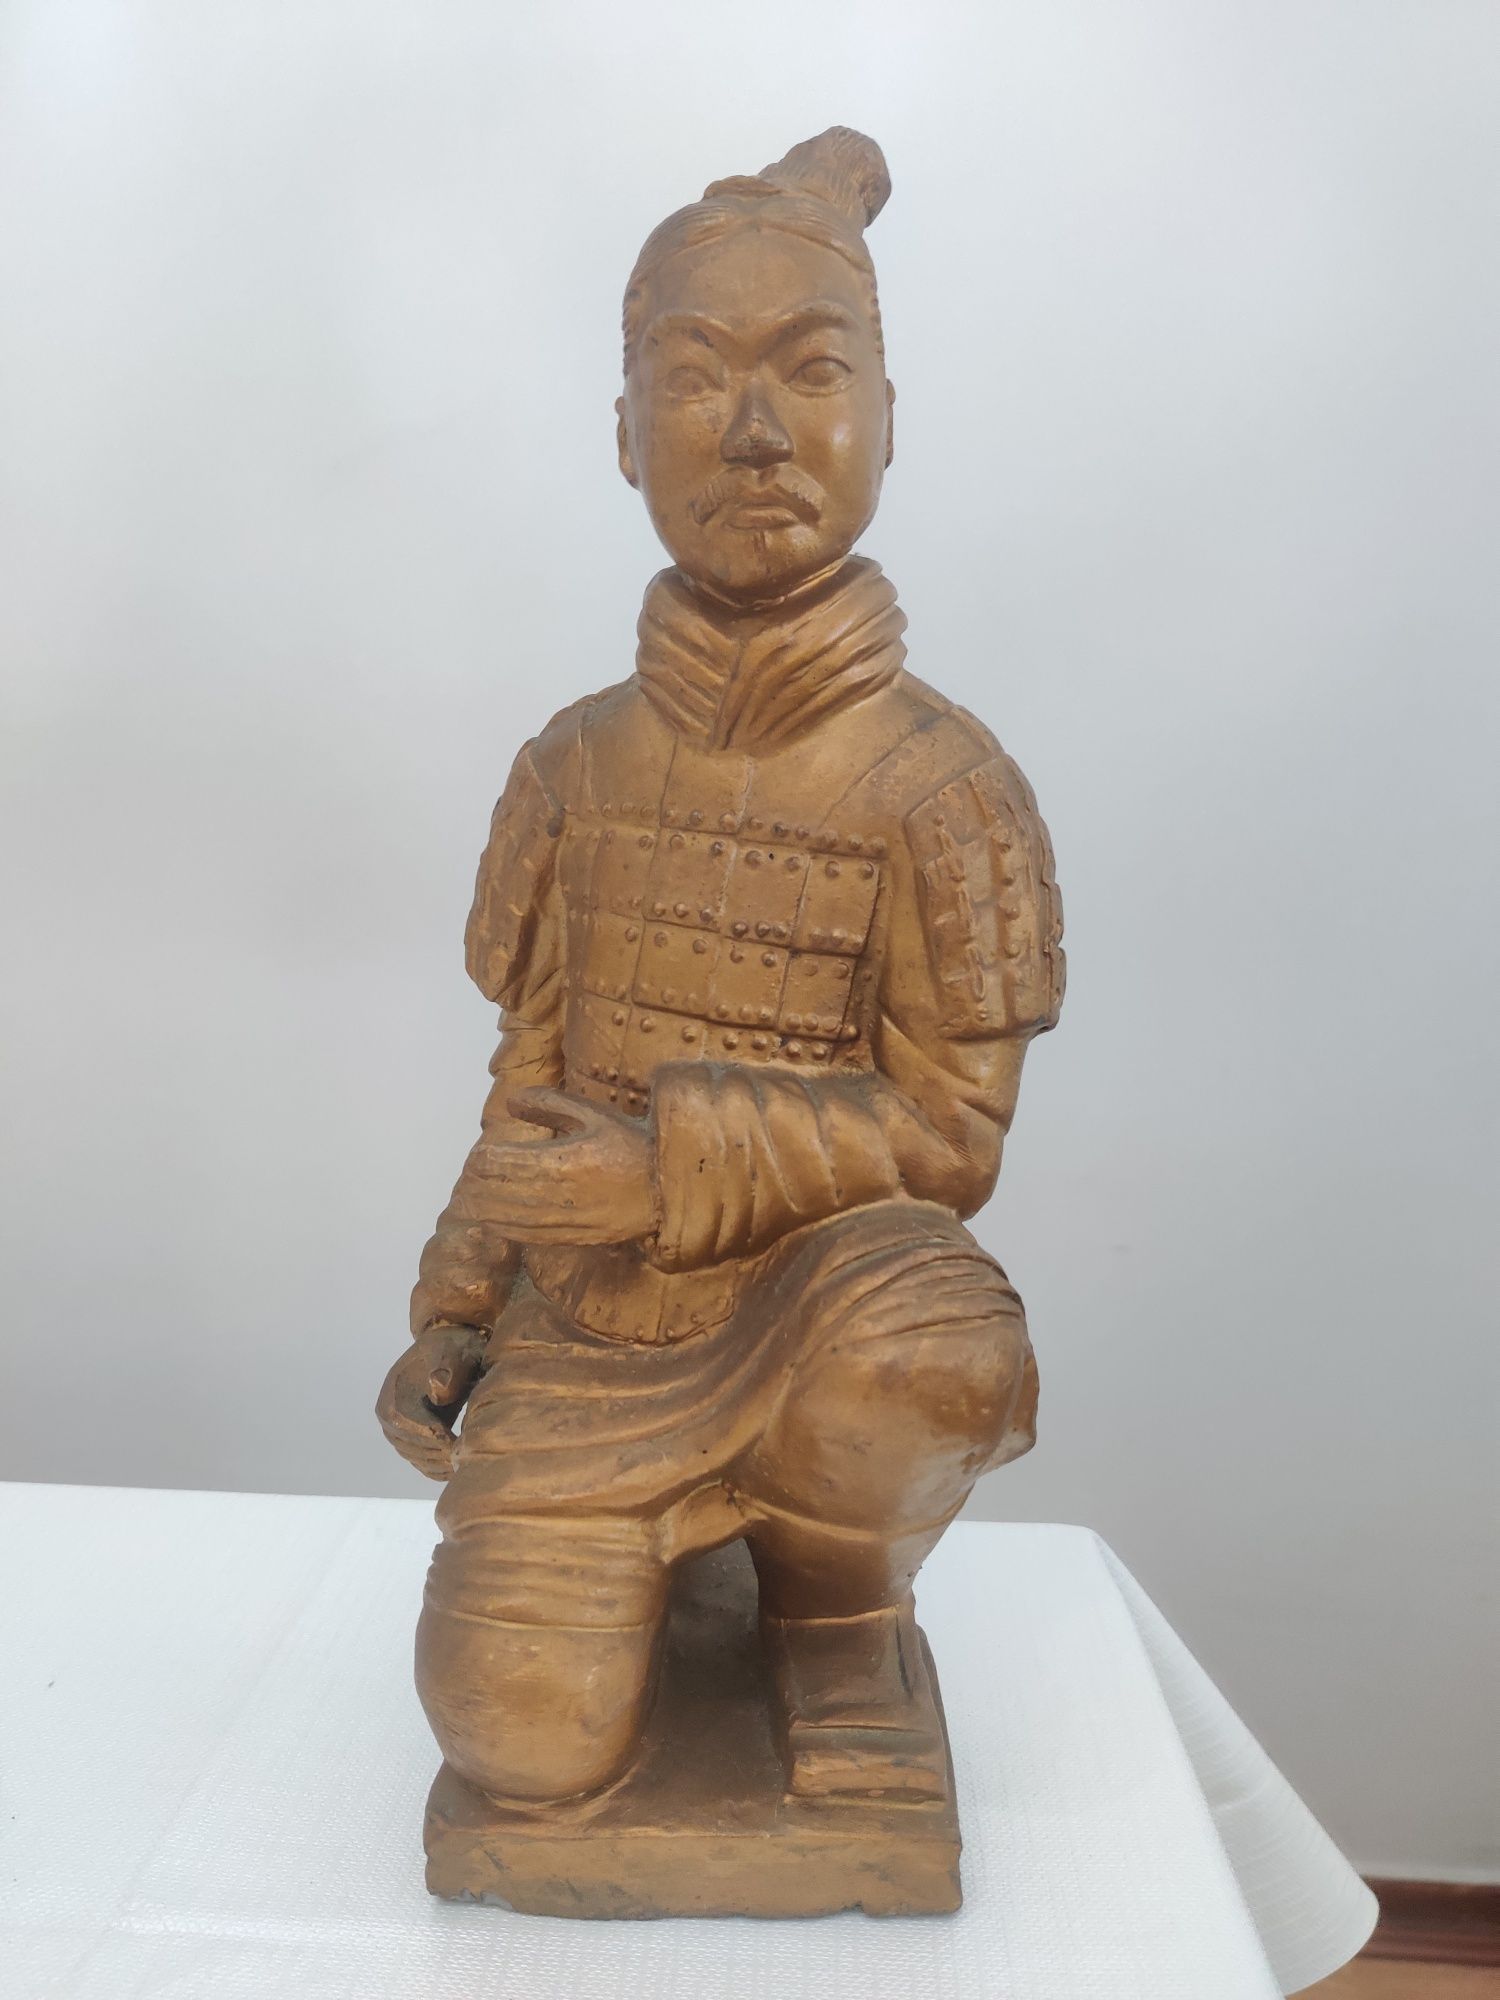 Guerreiro Chinês de Terracota. 
Altura:29cm